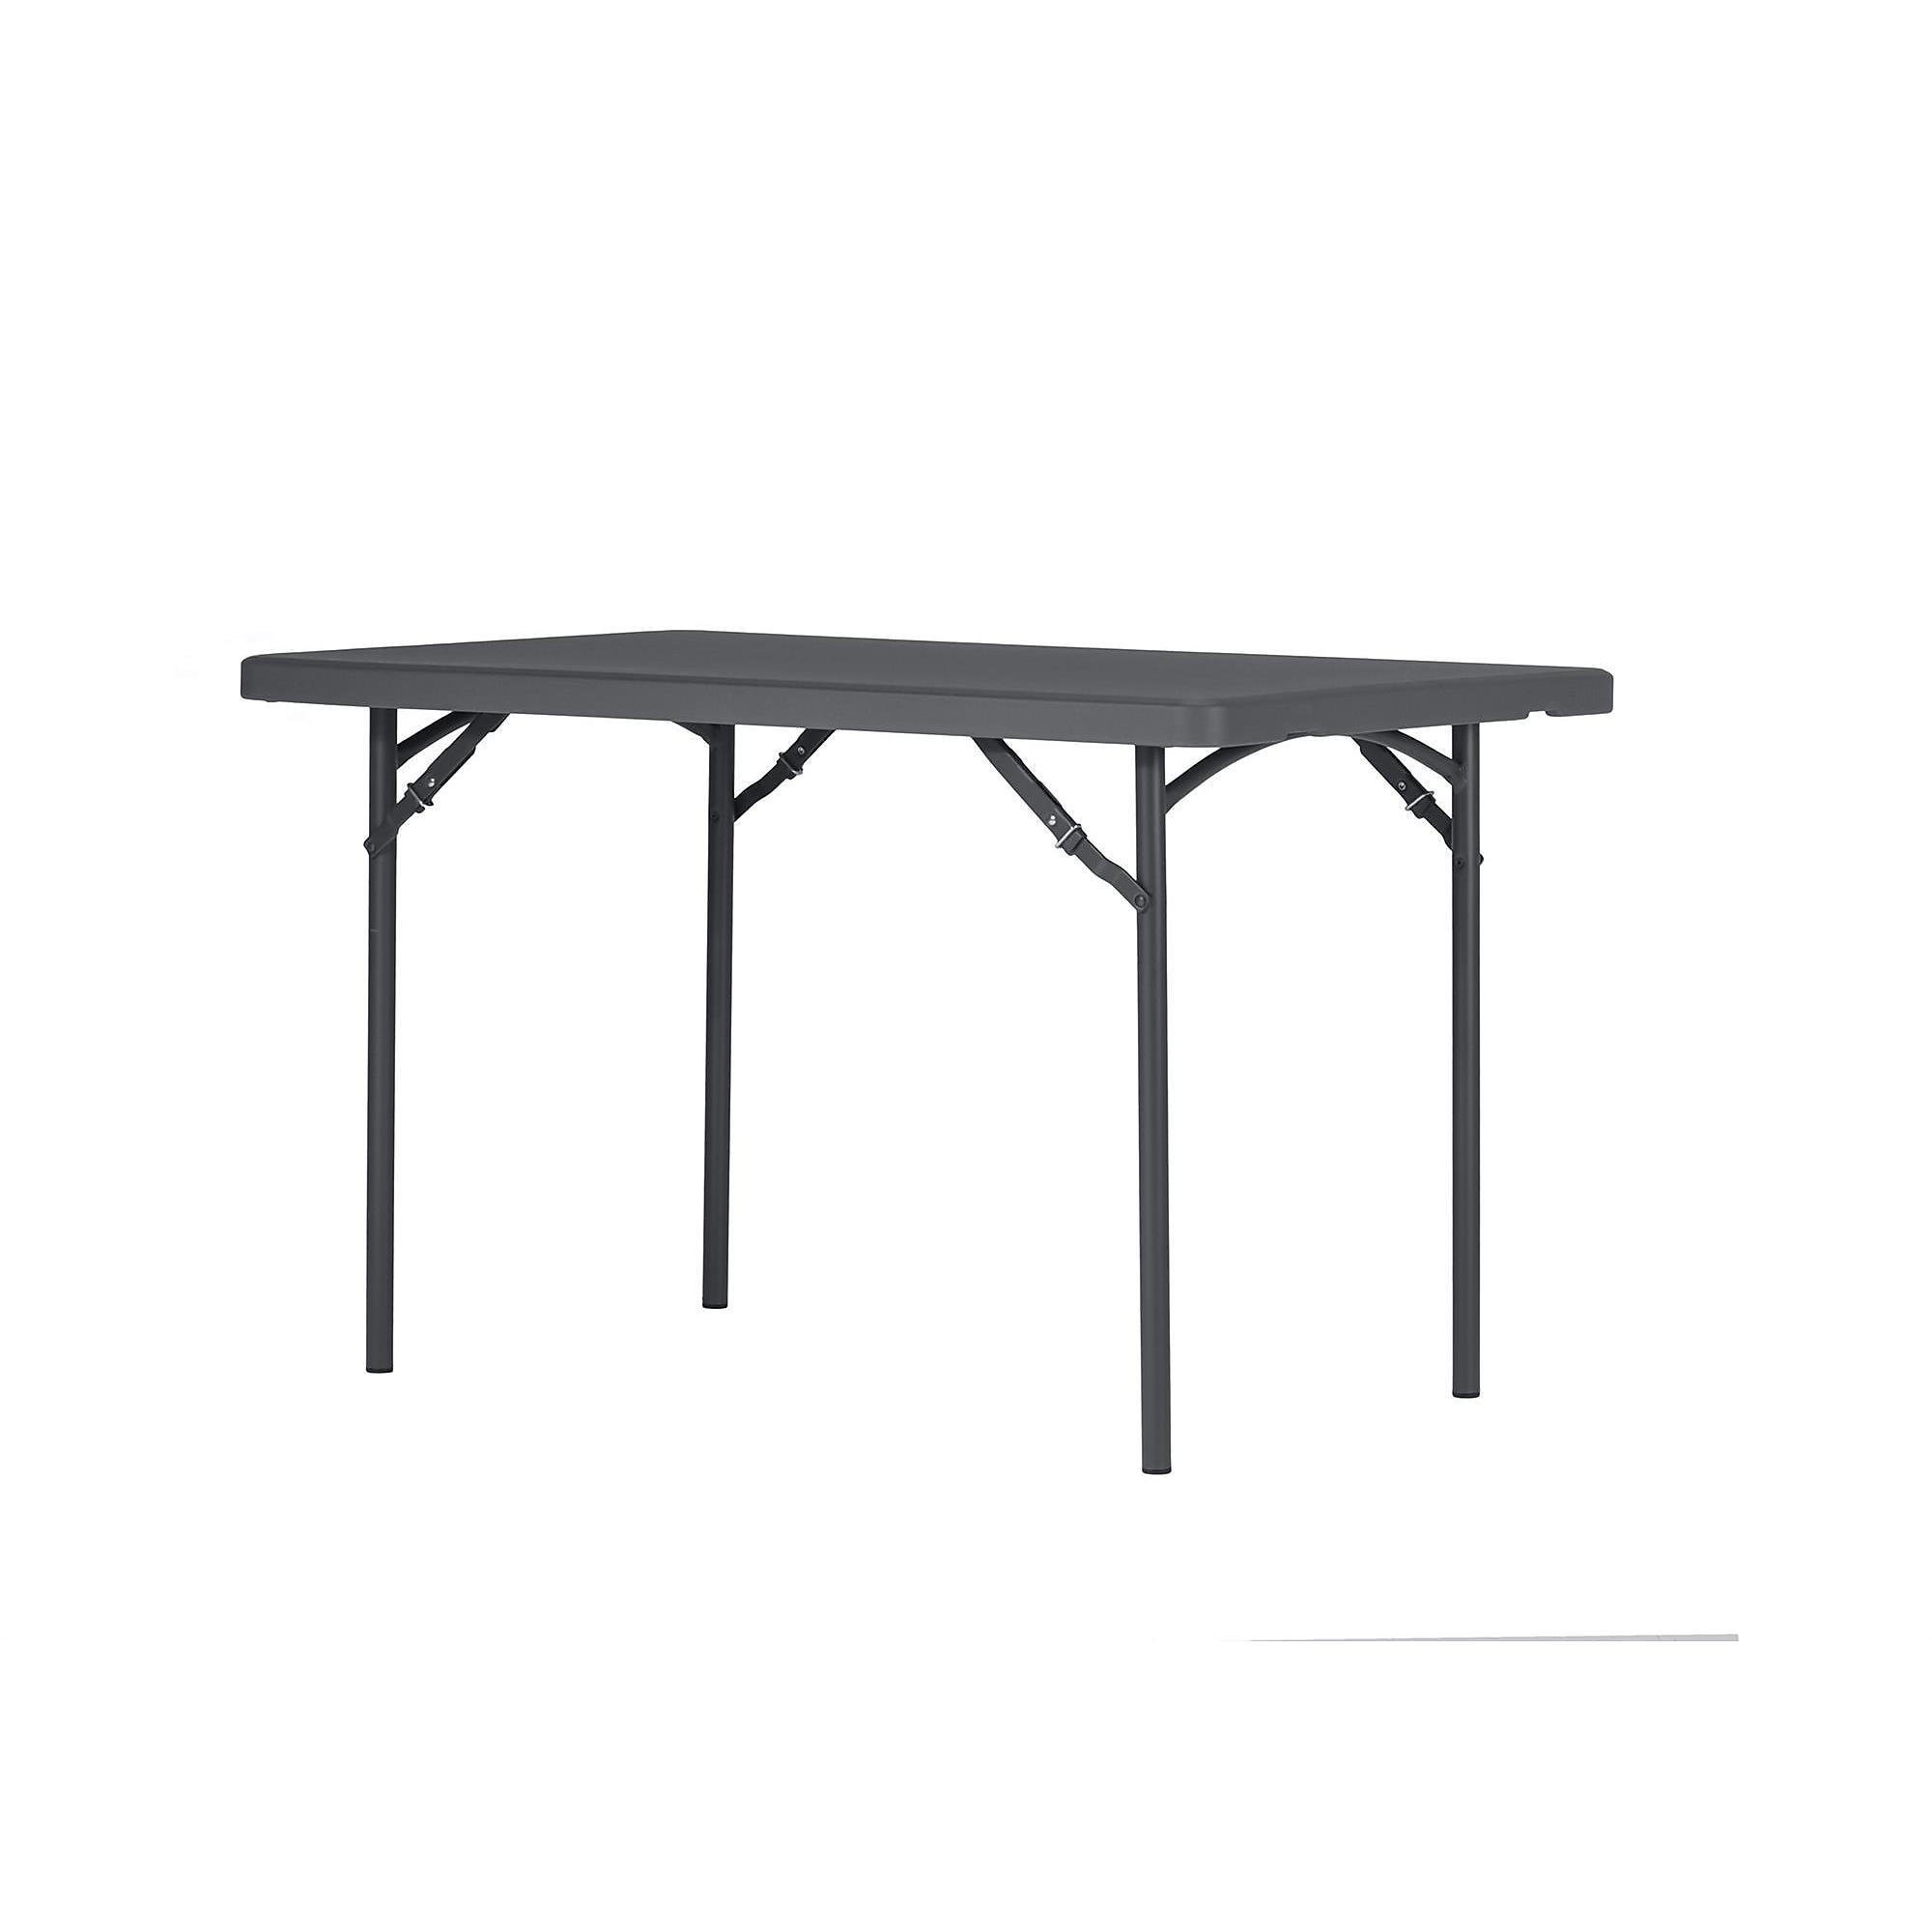 ZOWN, 4â Commercial Blow Mold Folding Table, Gray, Height 29.25 in, Width 48 in, Length 30 in, Model 60522SGY1E